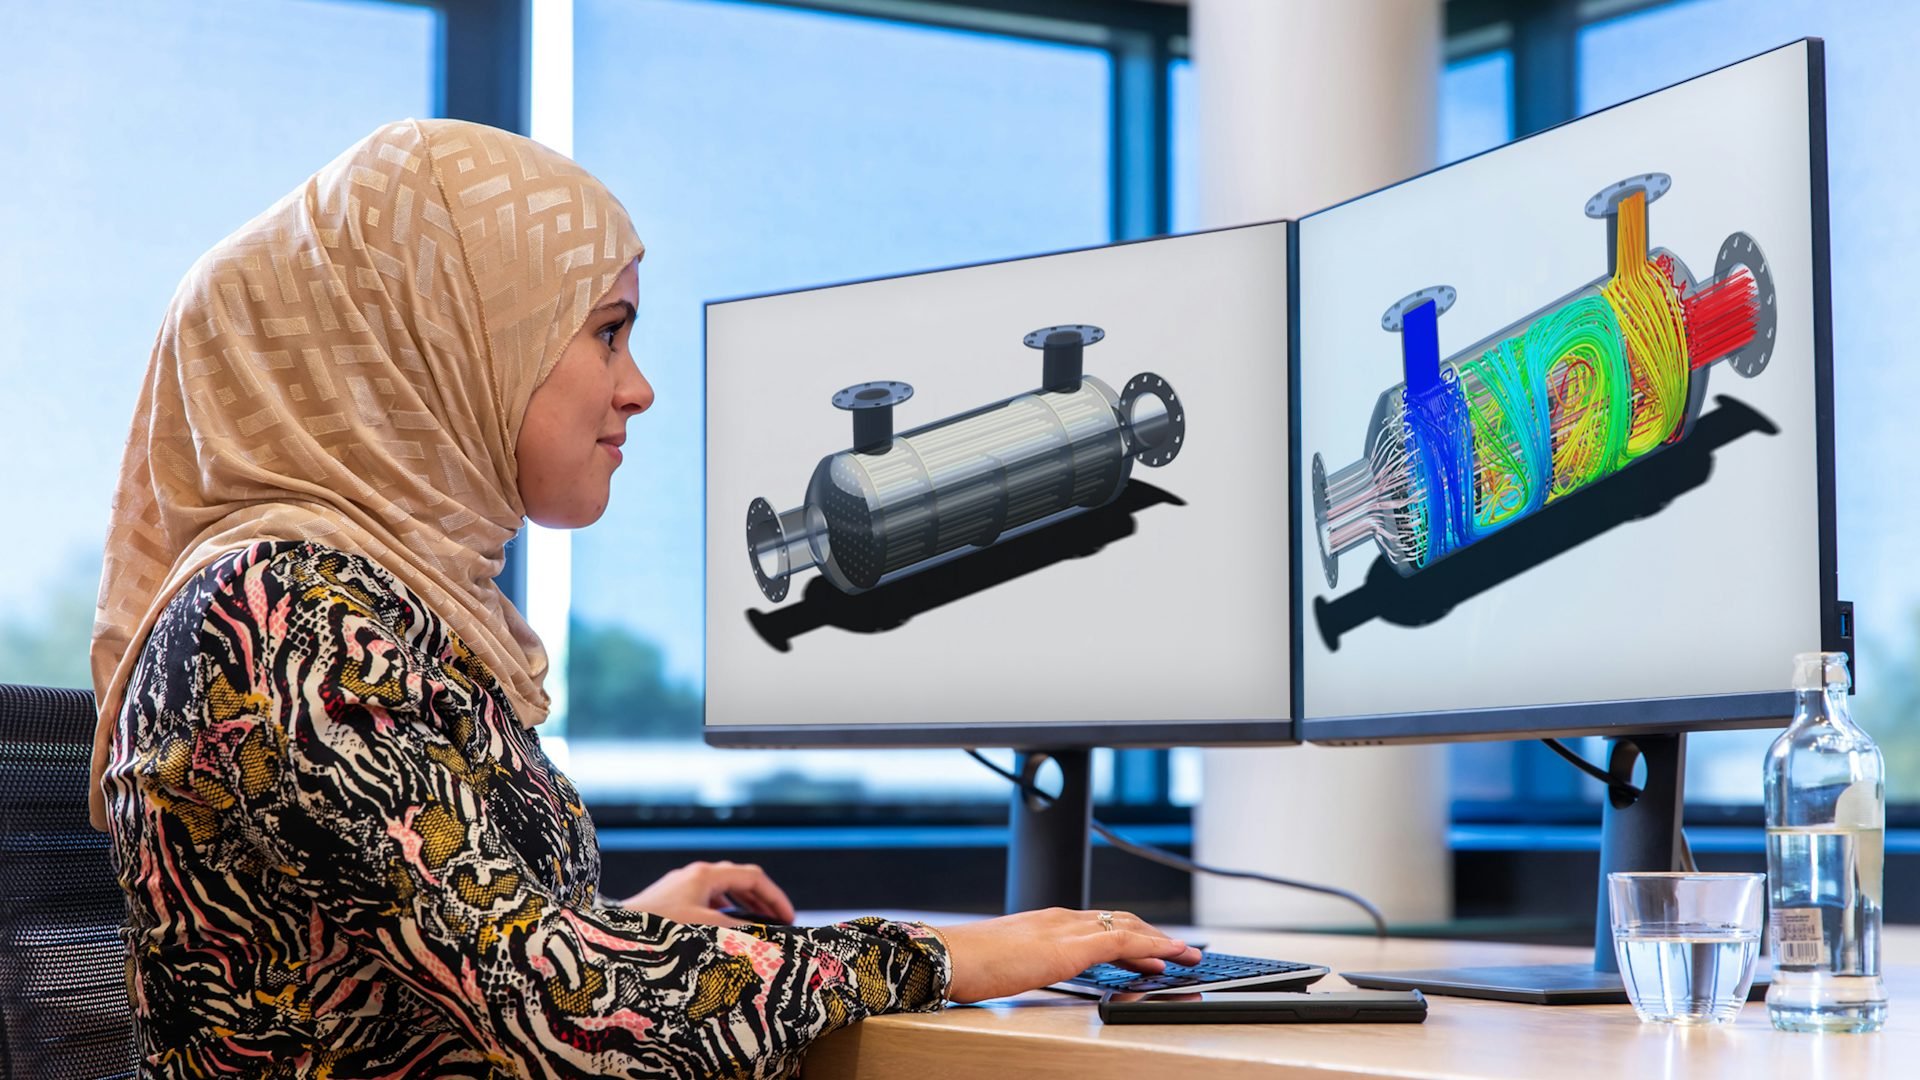 Kobieta oglądająca symulację CFD zintegrowaną ze środowiskiem CAD w oprogramowaniu Simcenter, wyświetlaną na kilku ekranach.